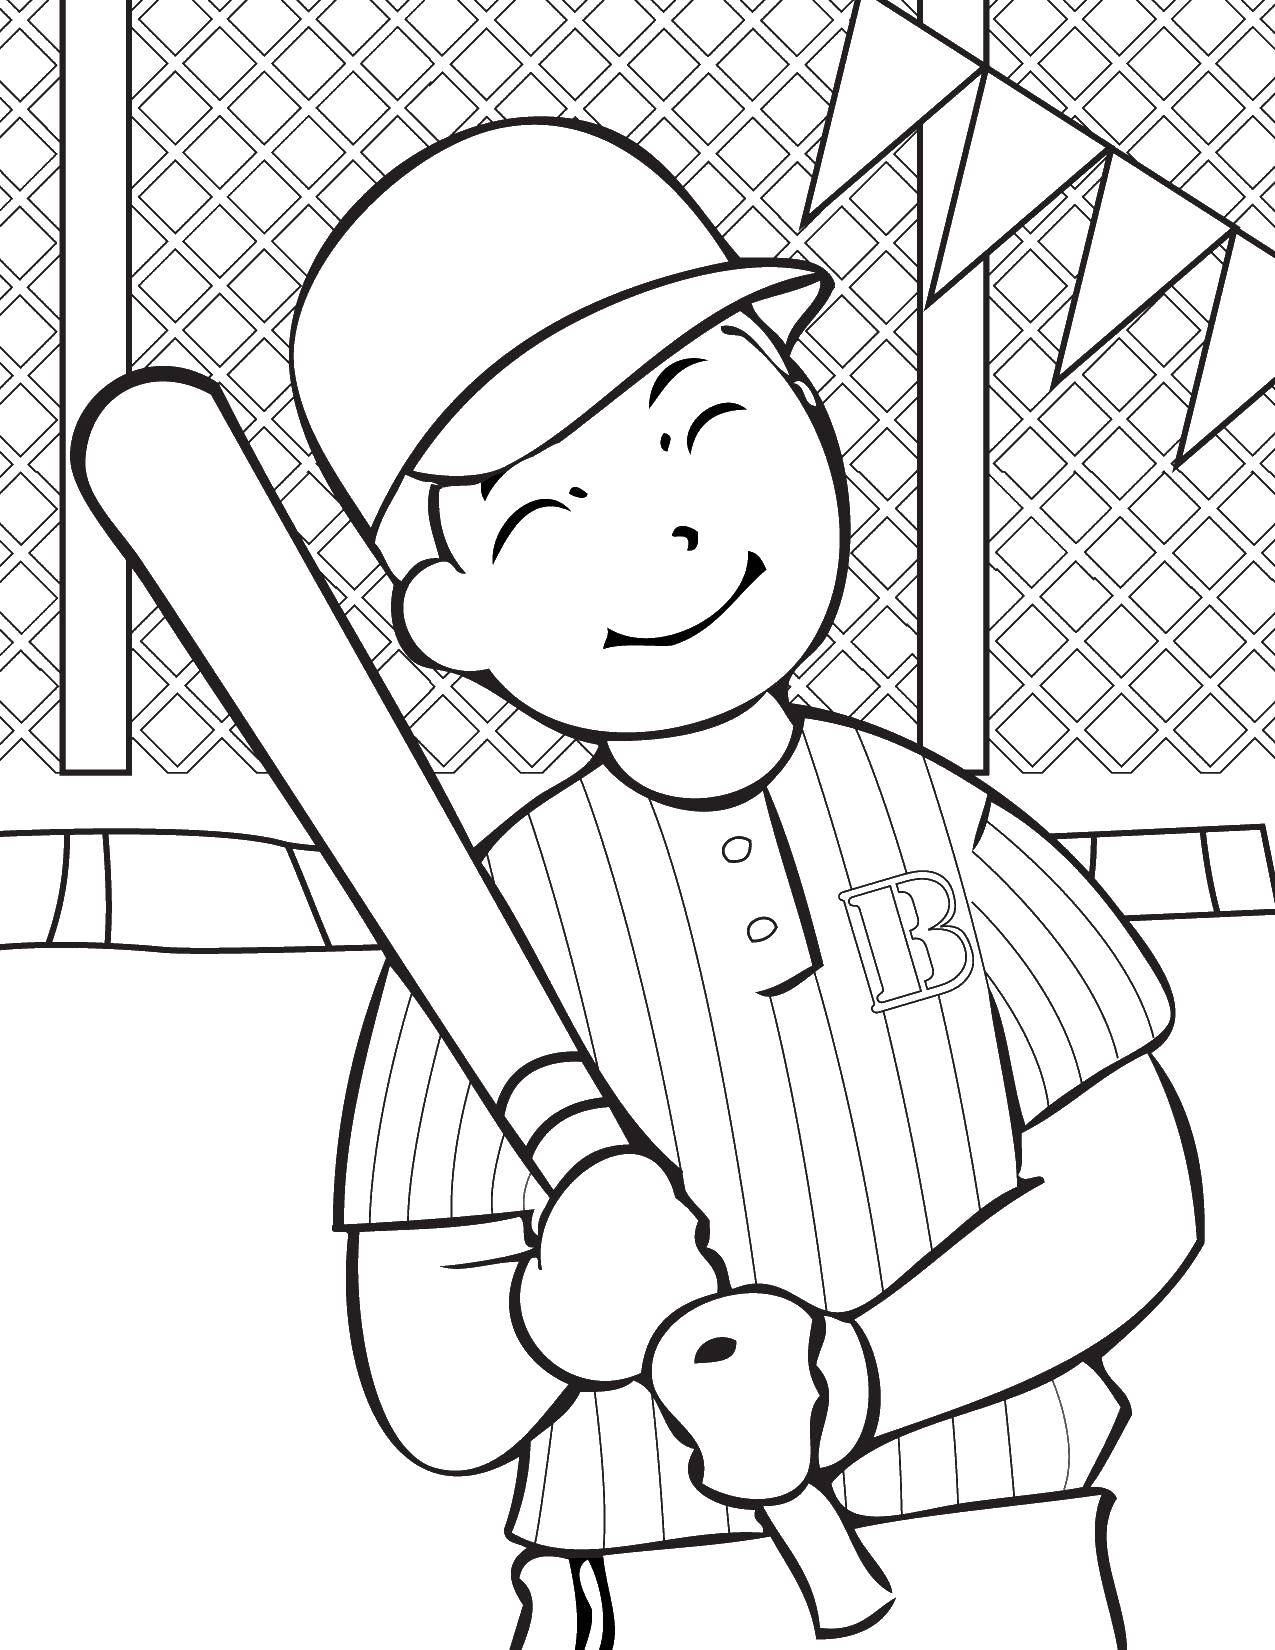 Название: Раскраска Мальчик держит бейсбольную биту. Категория: Спорт. Теги: мальчик , бейсбольная бита.